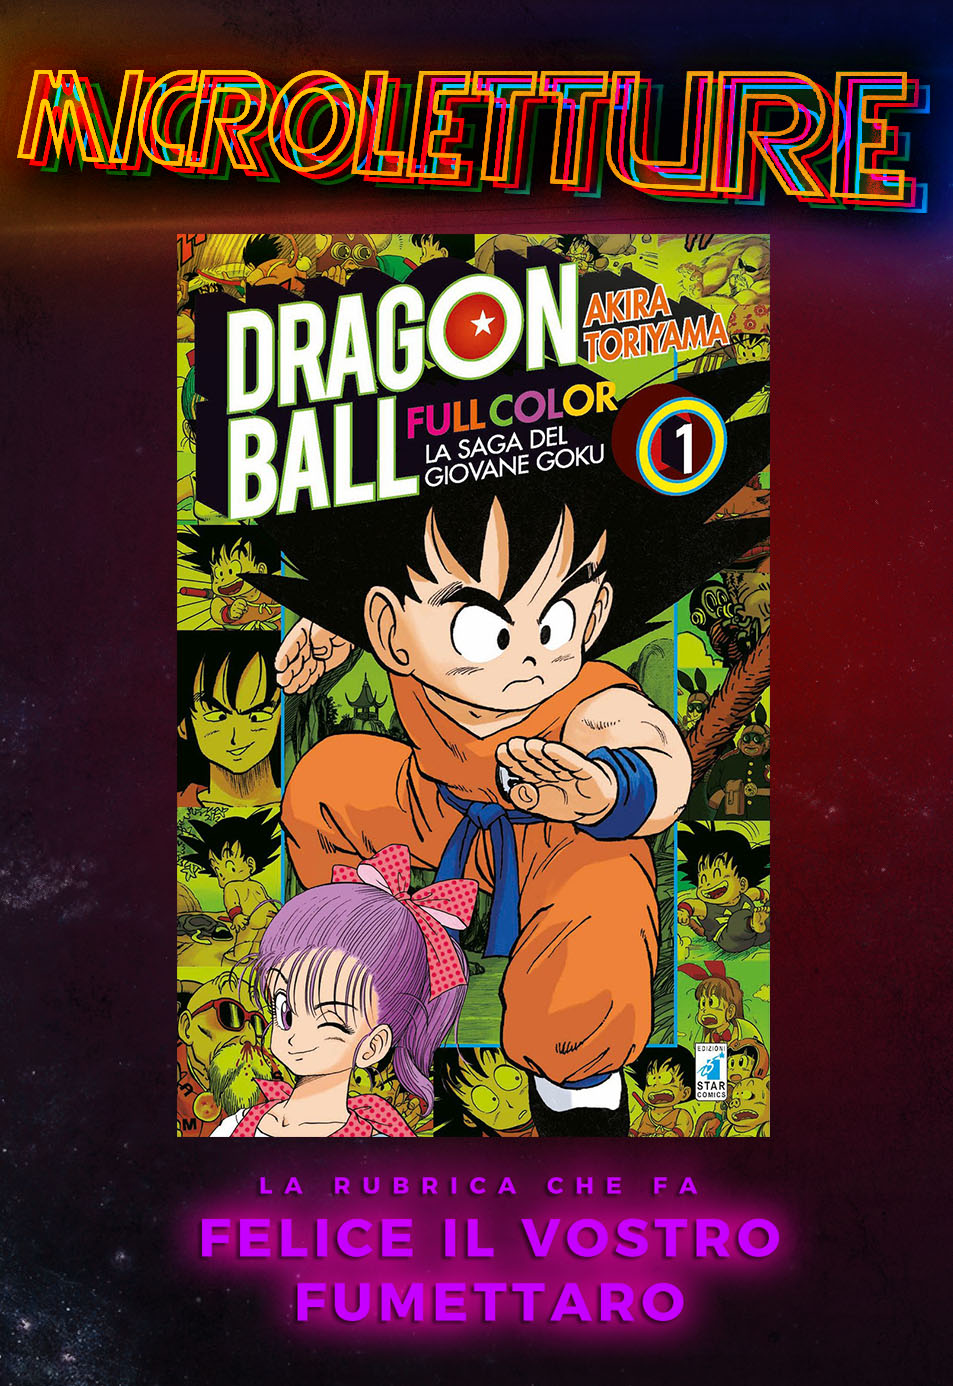 La Dragon Ball Ultimate Edition pubblicata da Star Comics - Fumettologica